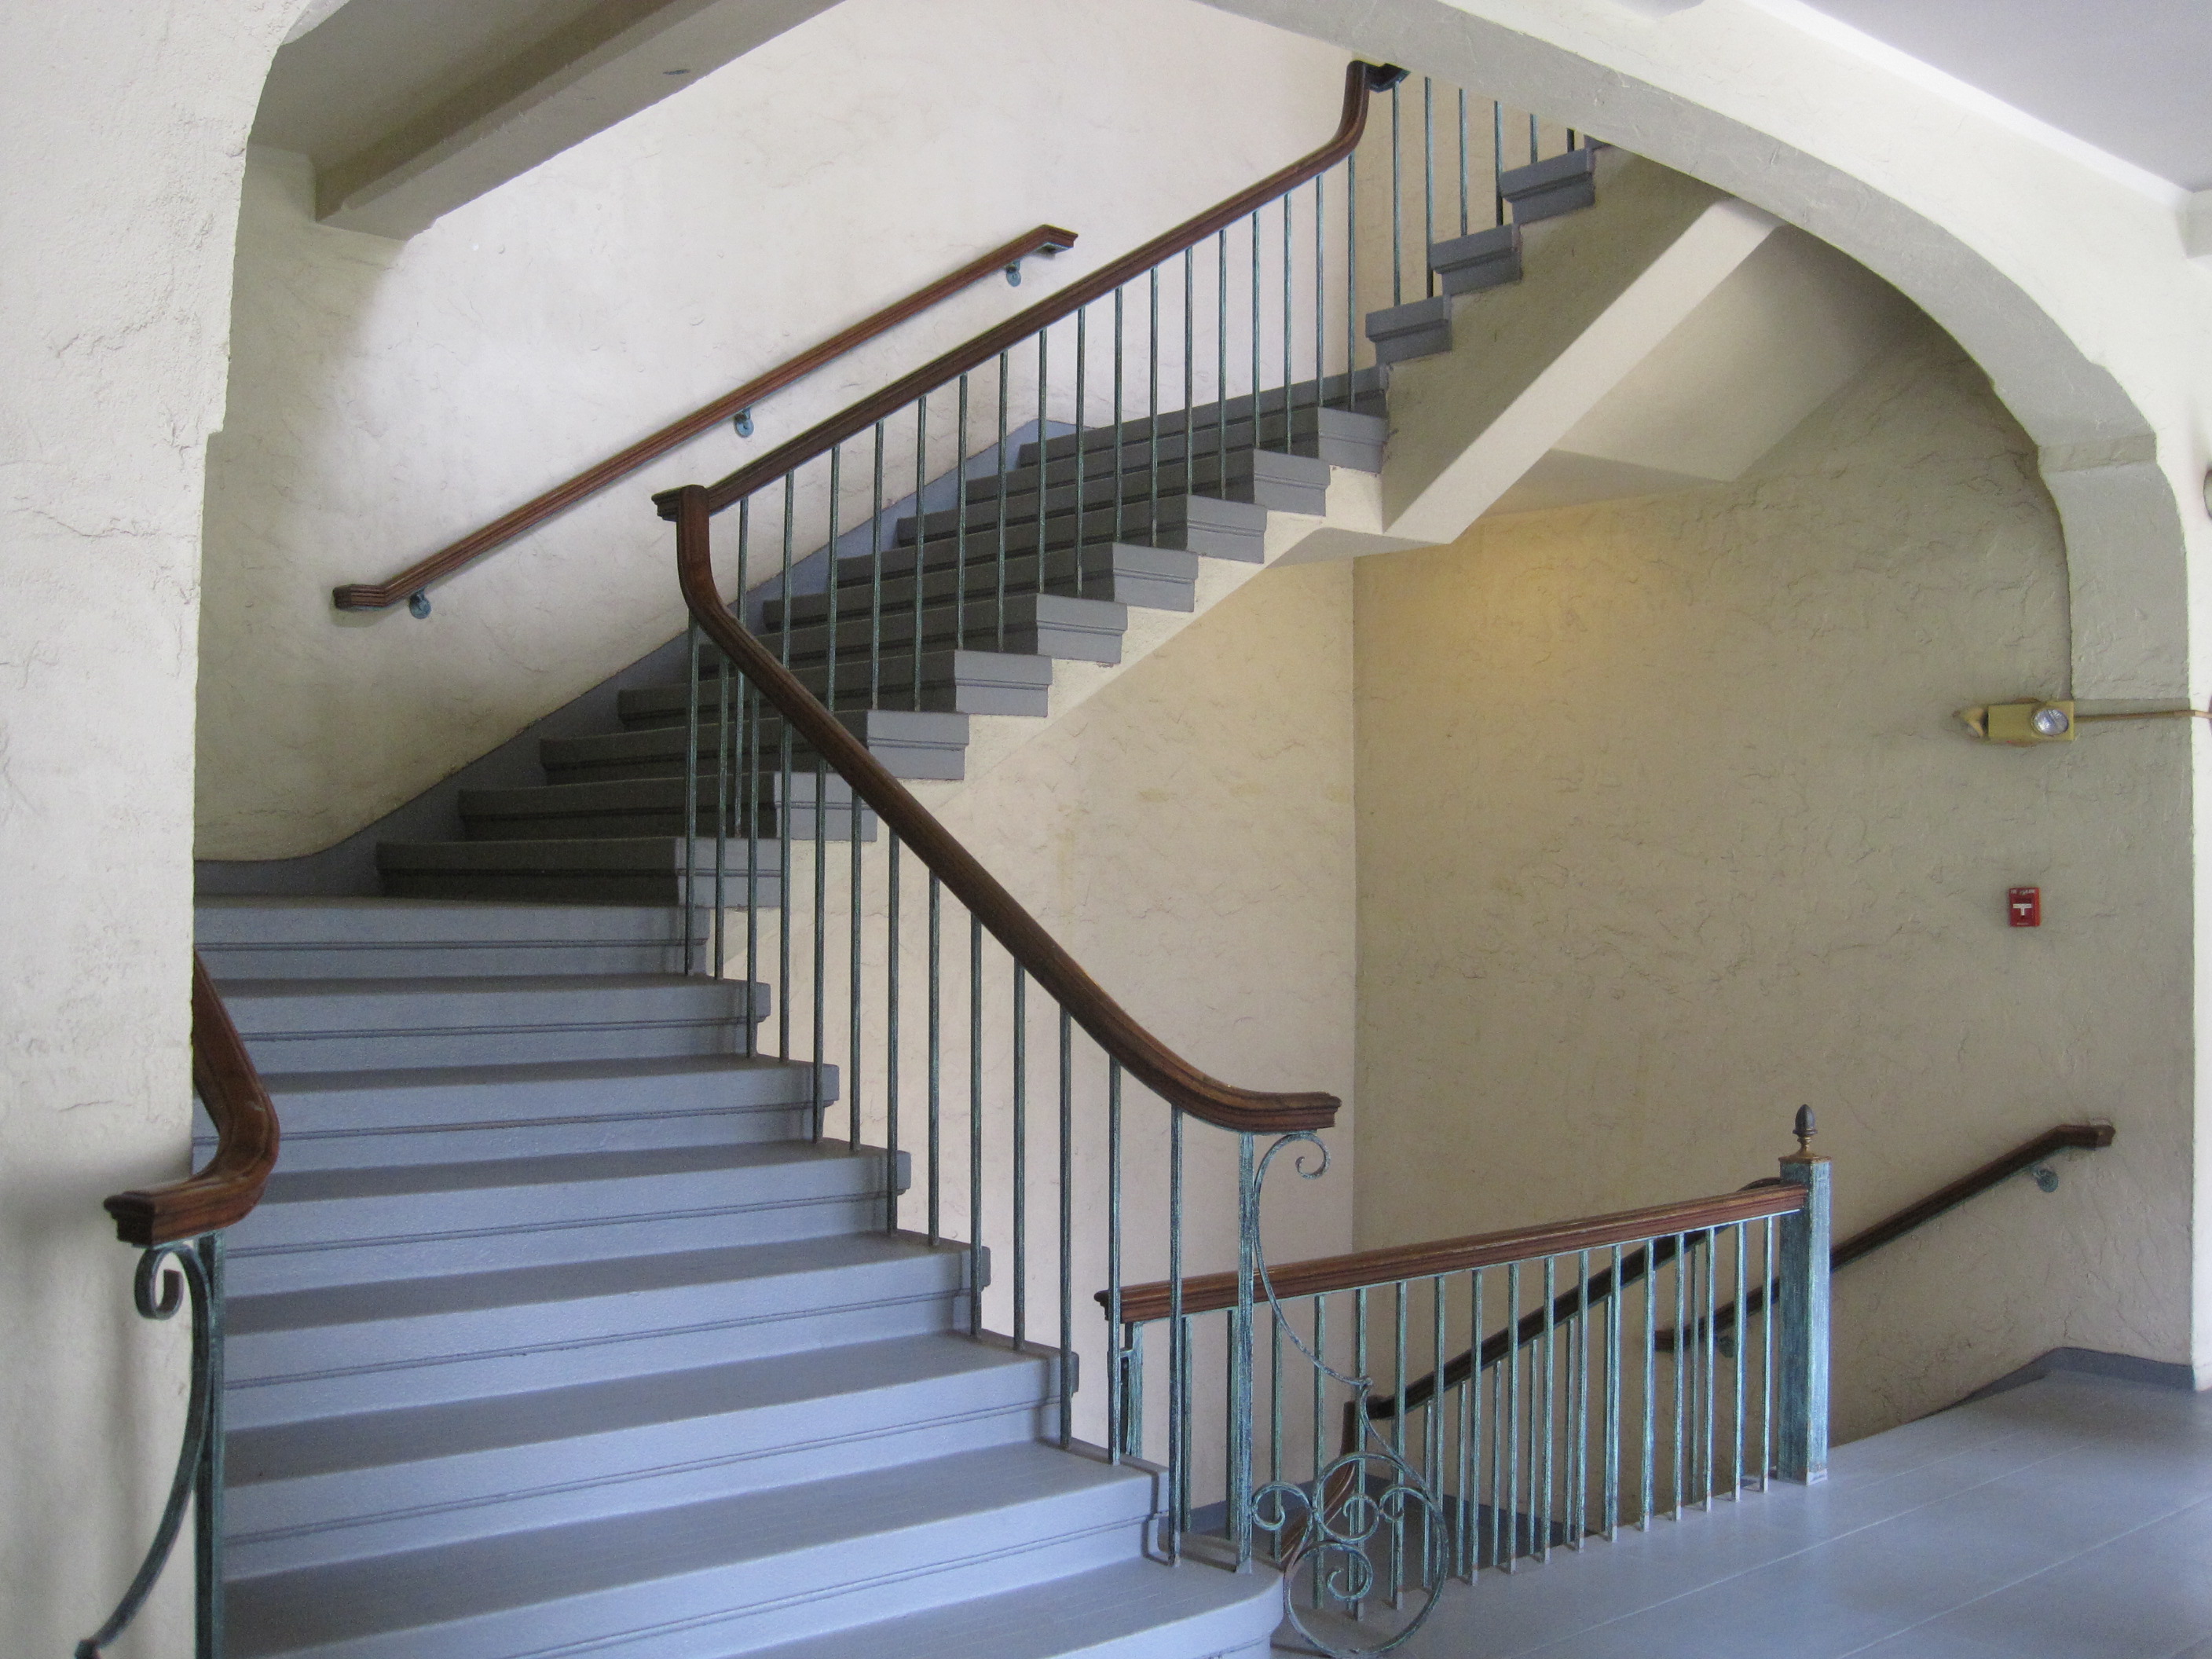 File:Honolulu-LaniakeaYWCA-stairwell.JPG - Wikimedia Commons